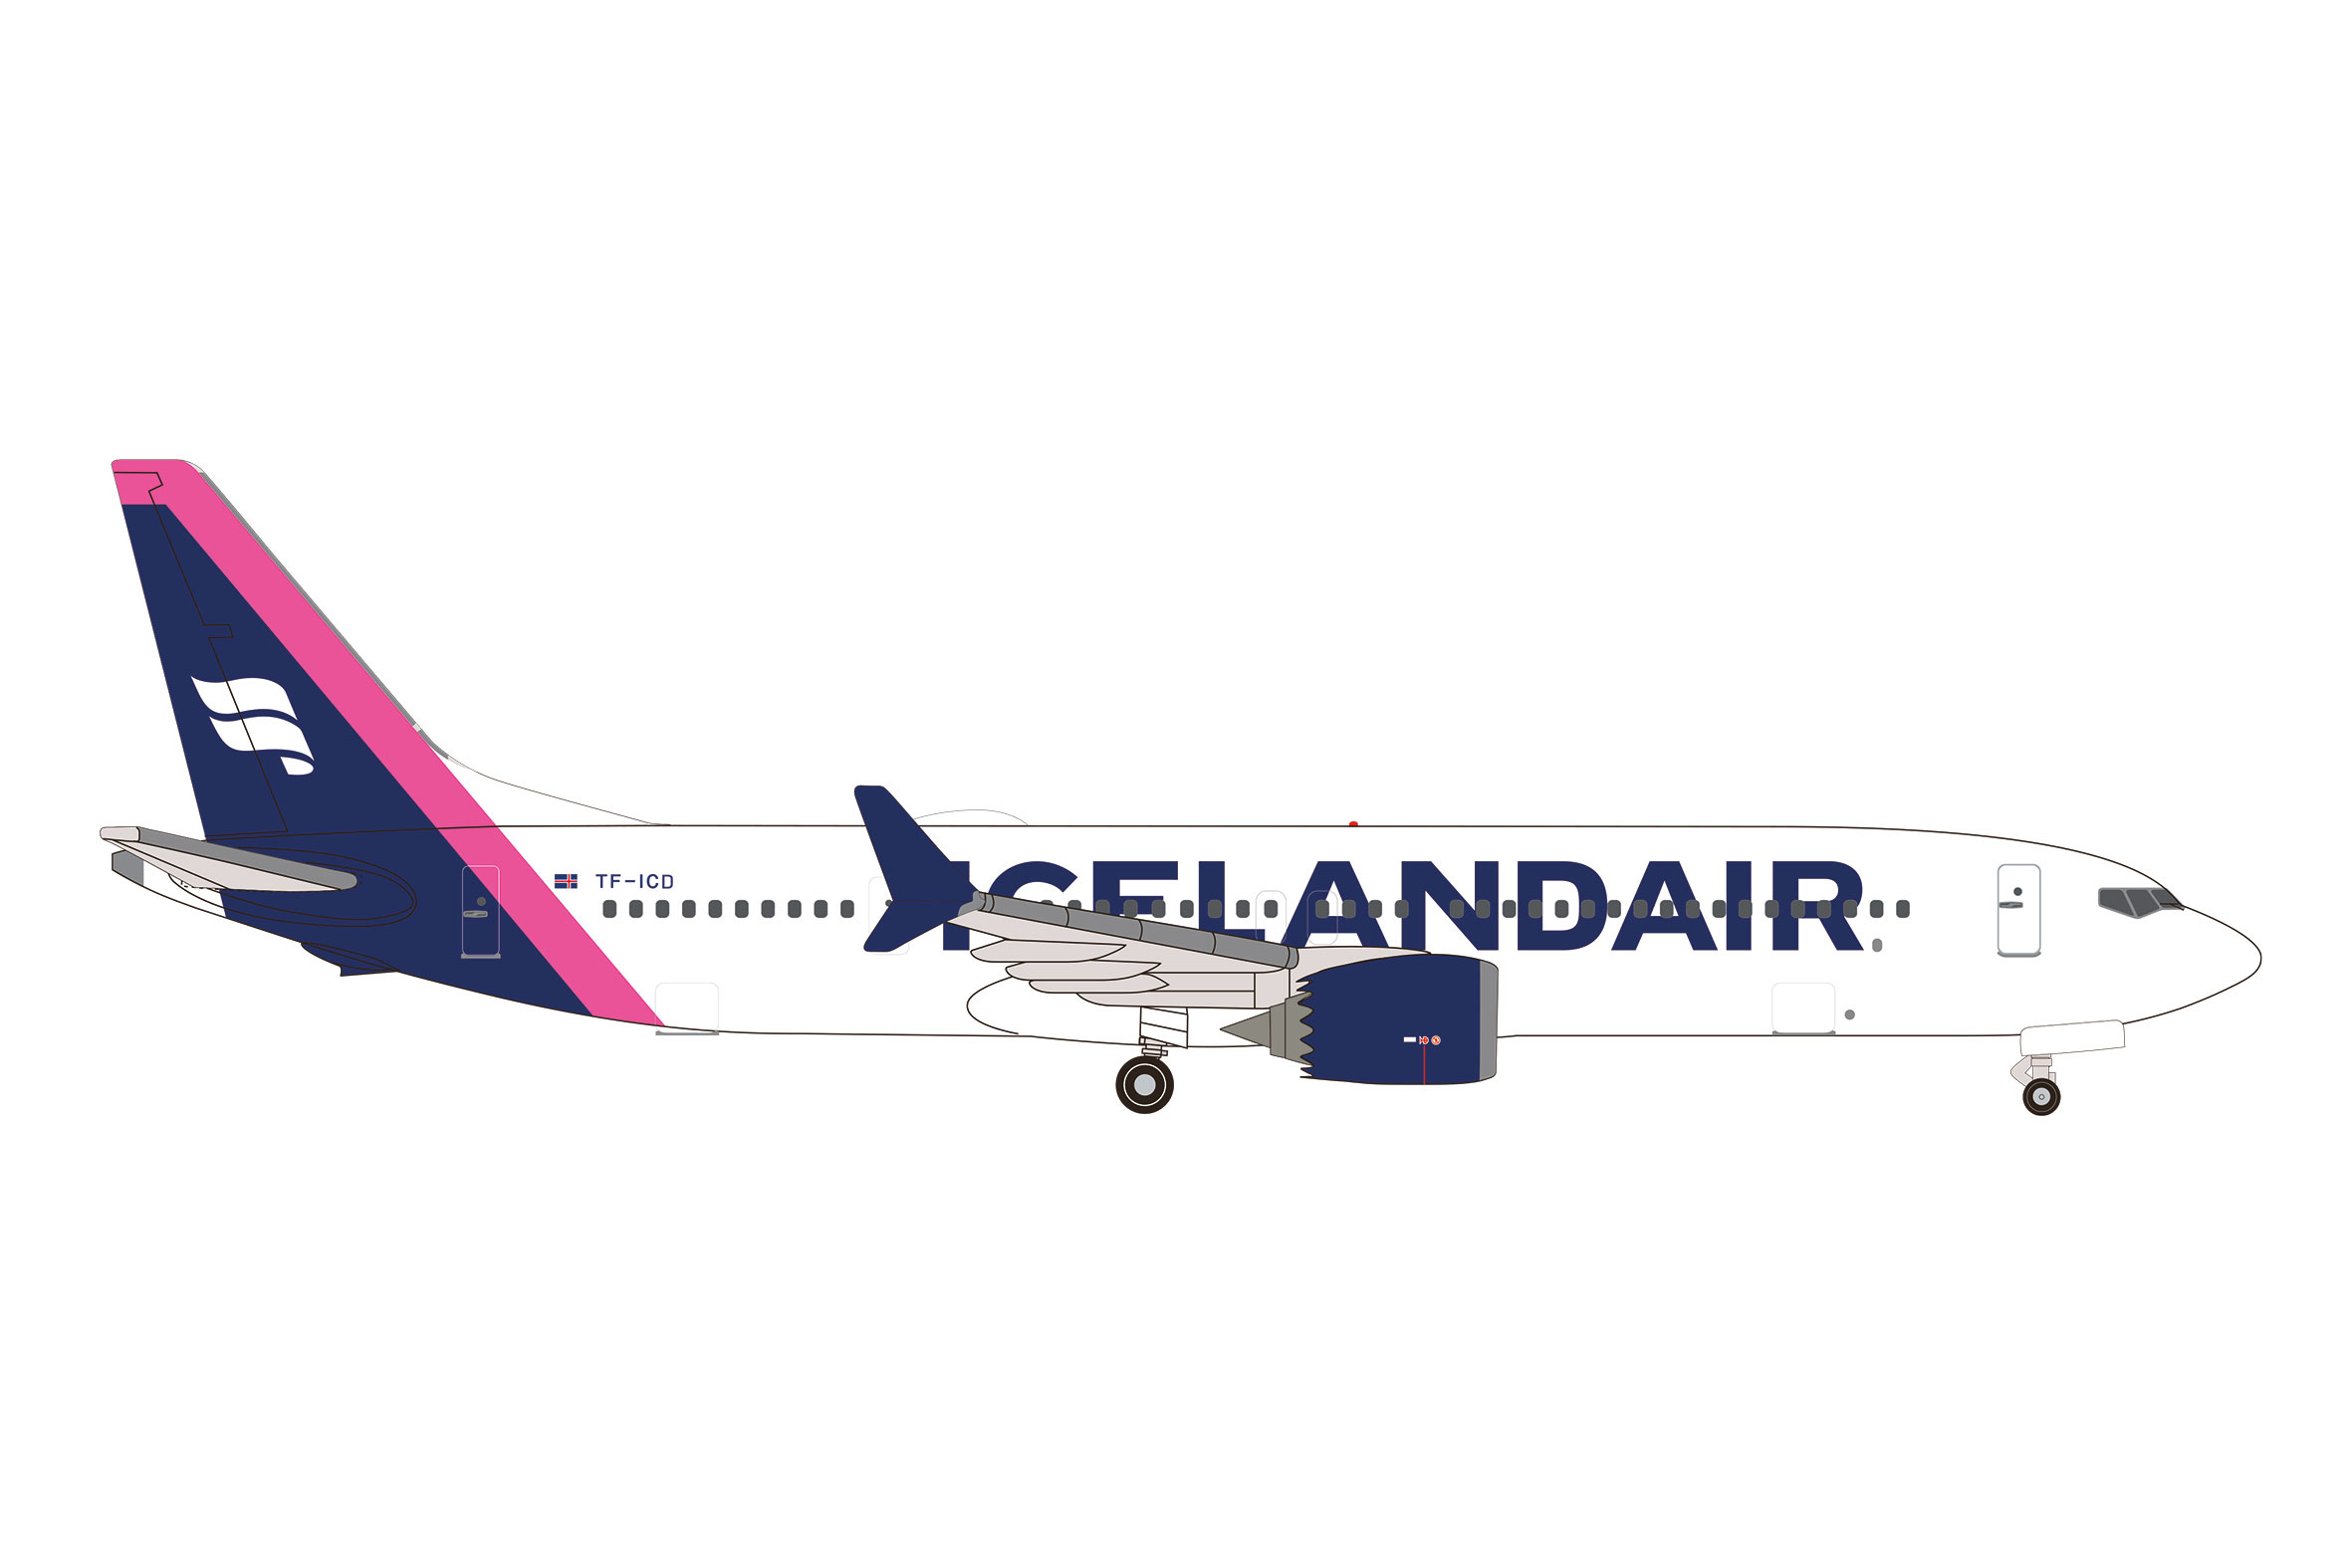 Icelandair Boeing 737 Max 9 - 